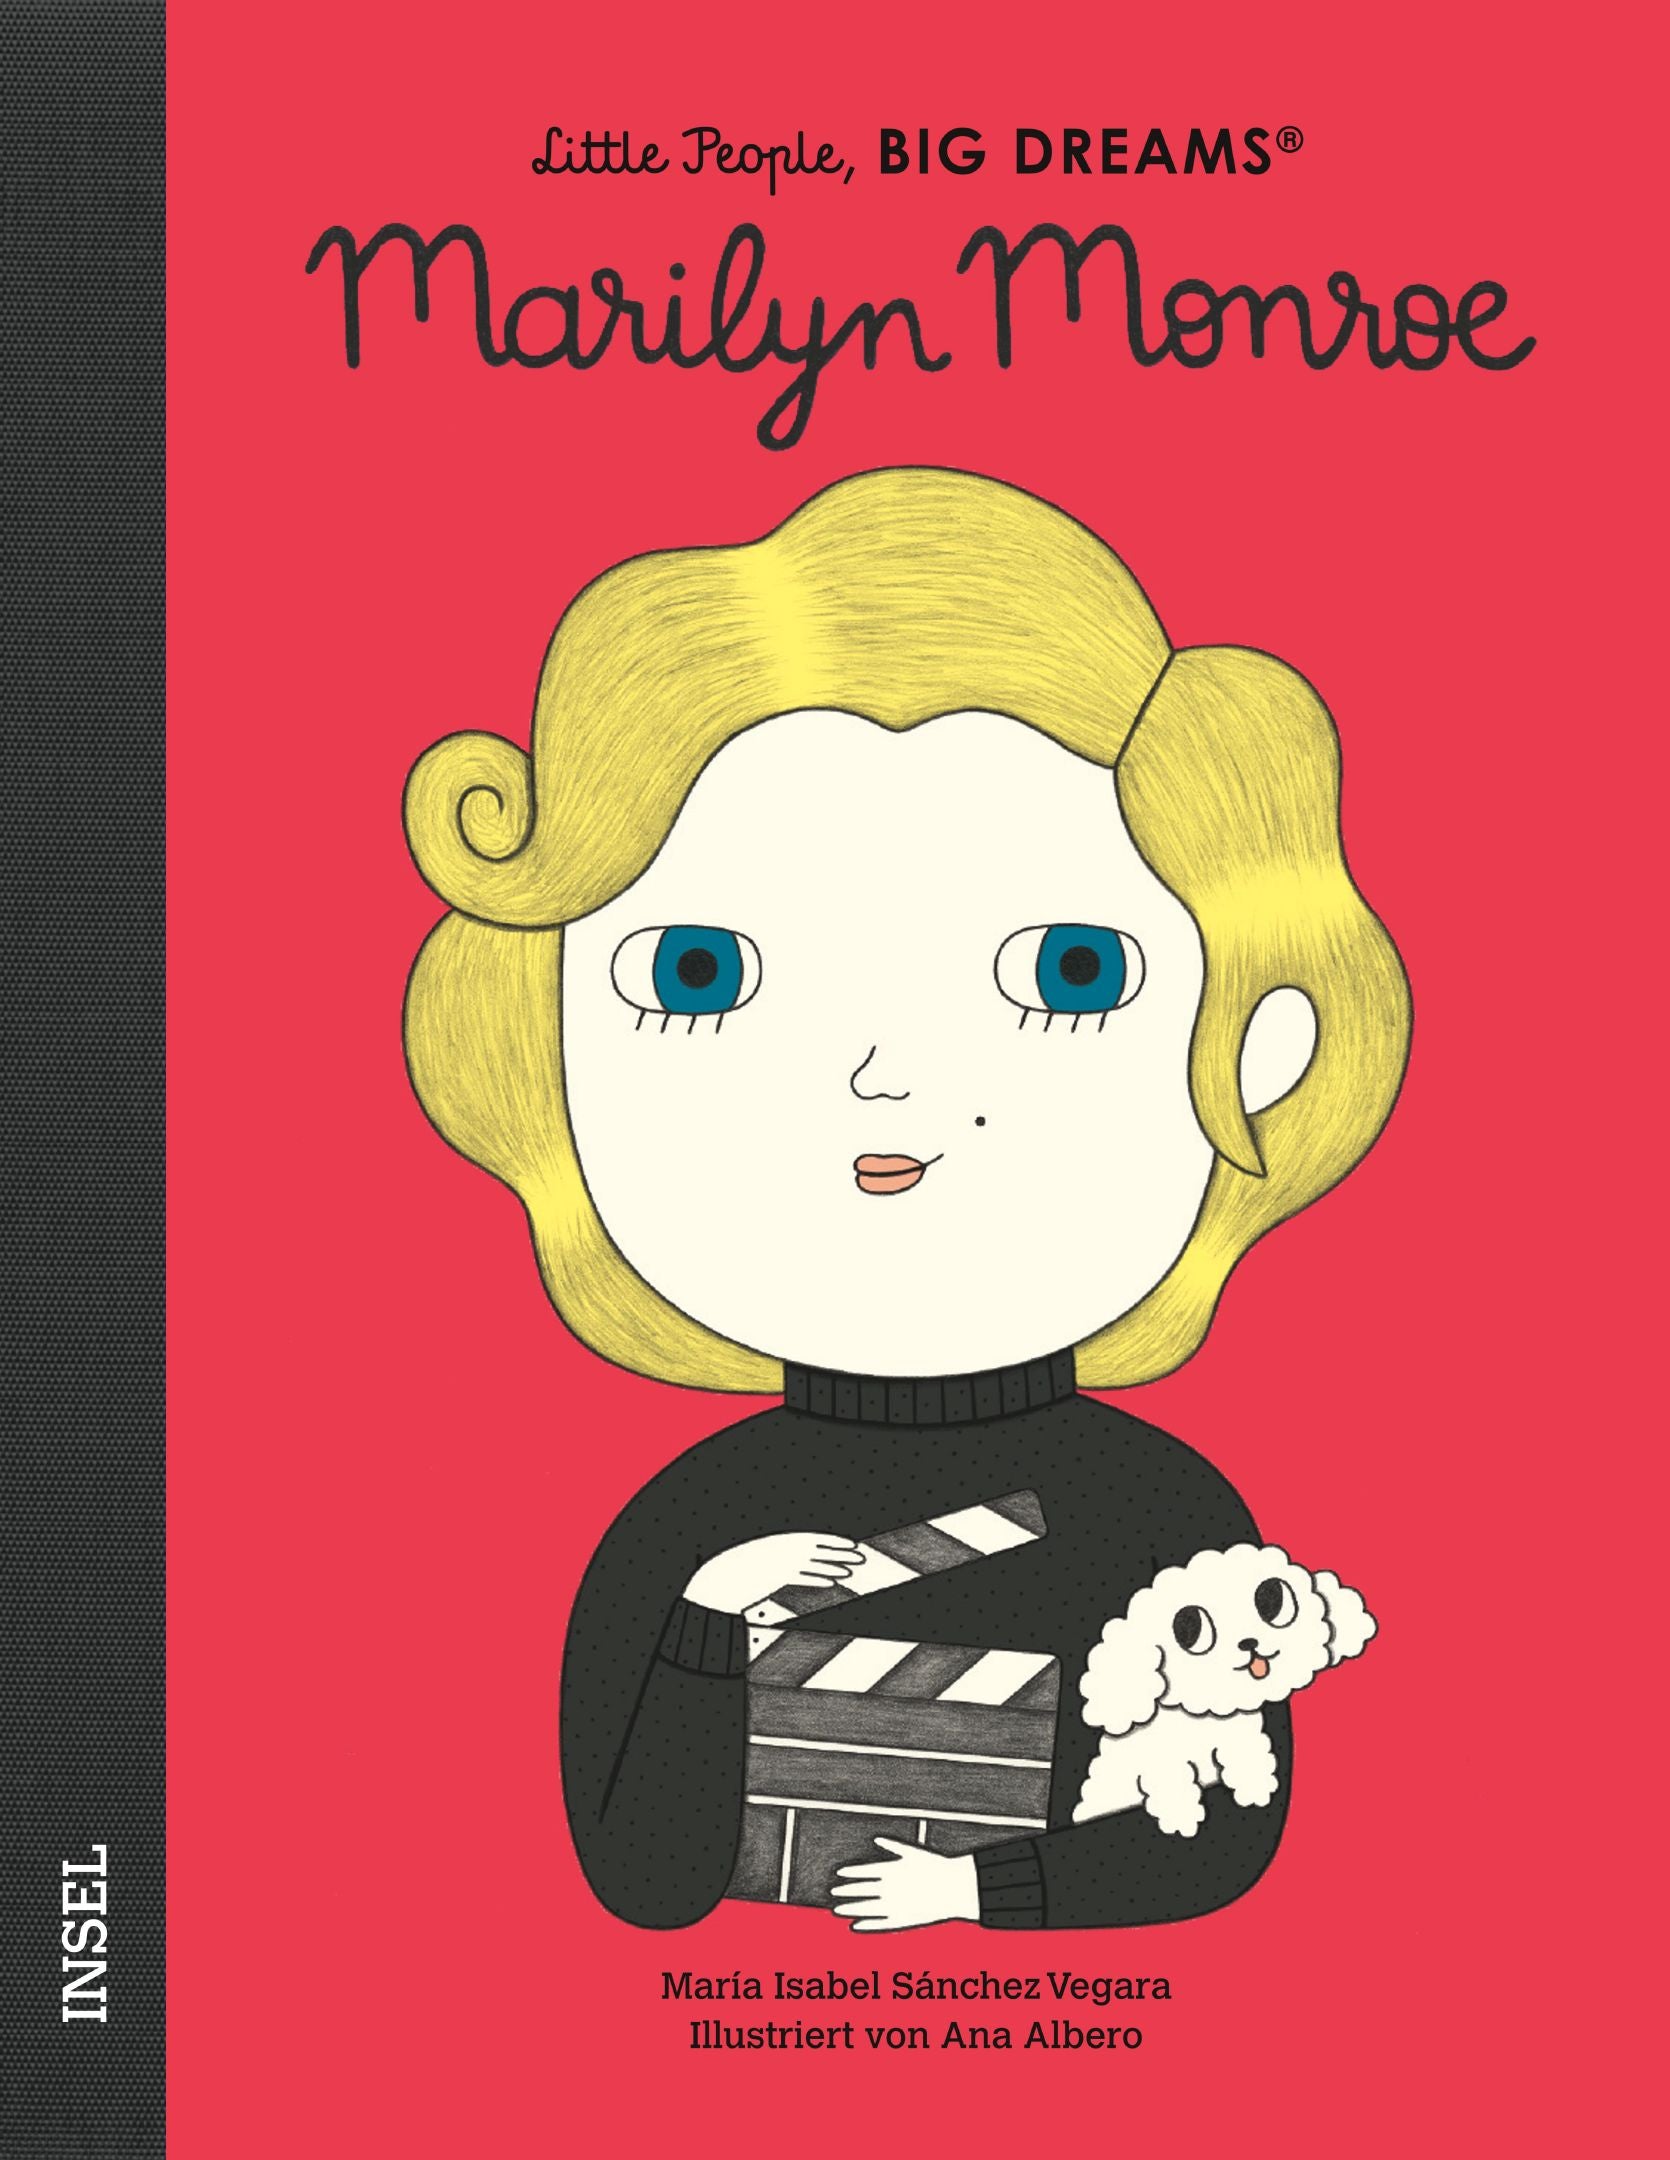 Little People - Marilyn Monroe